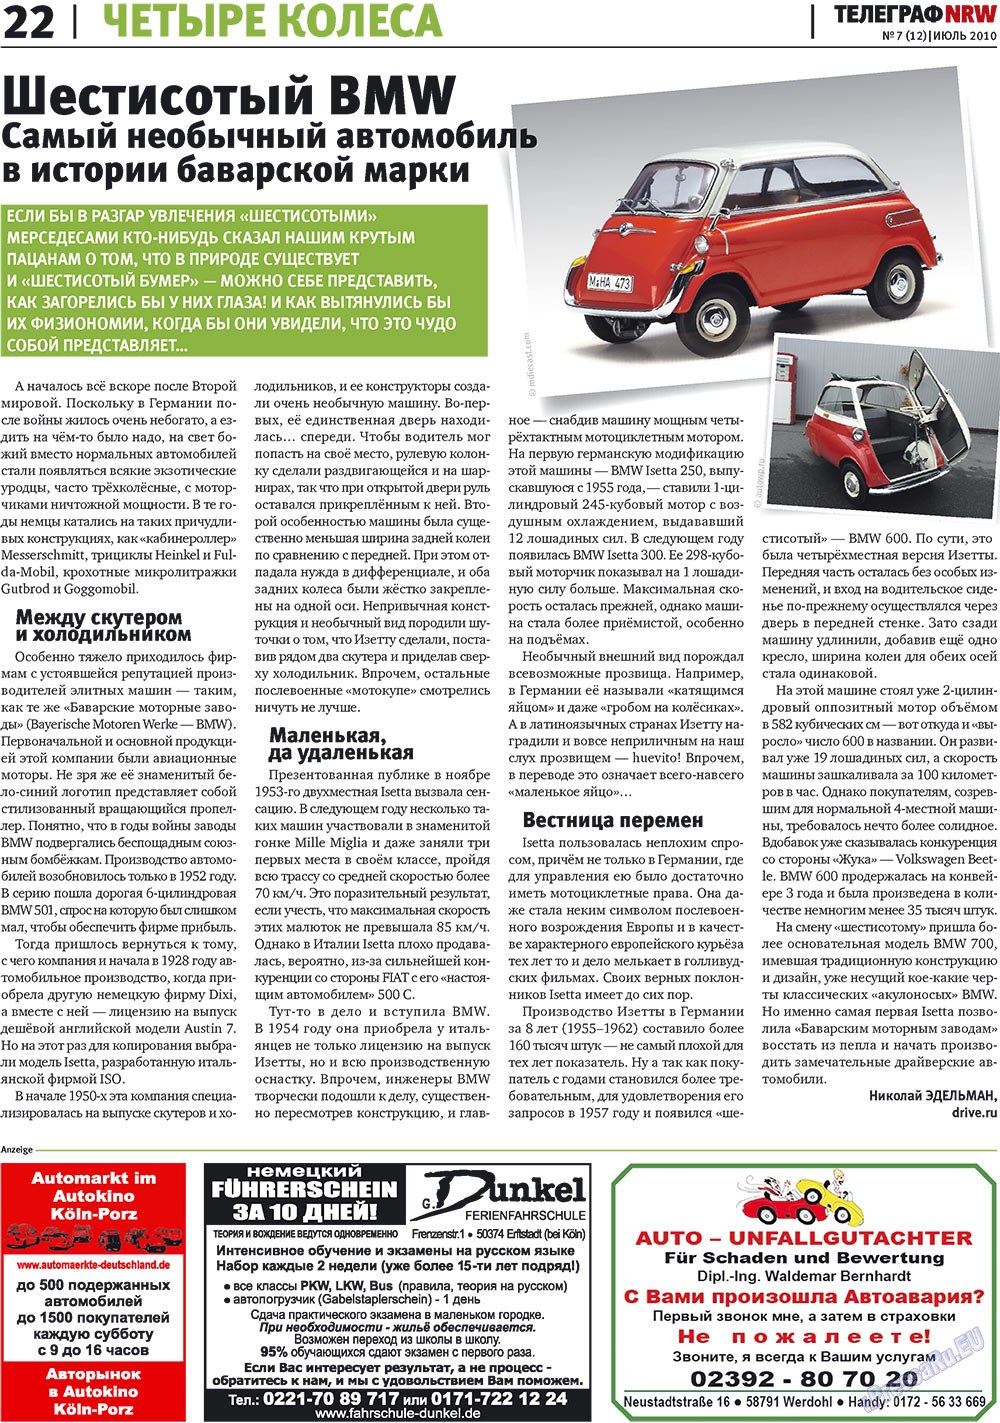 Телеграф NRW (газета). 2010 год, номер 7, стр. 22